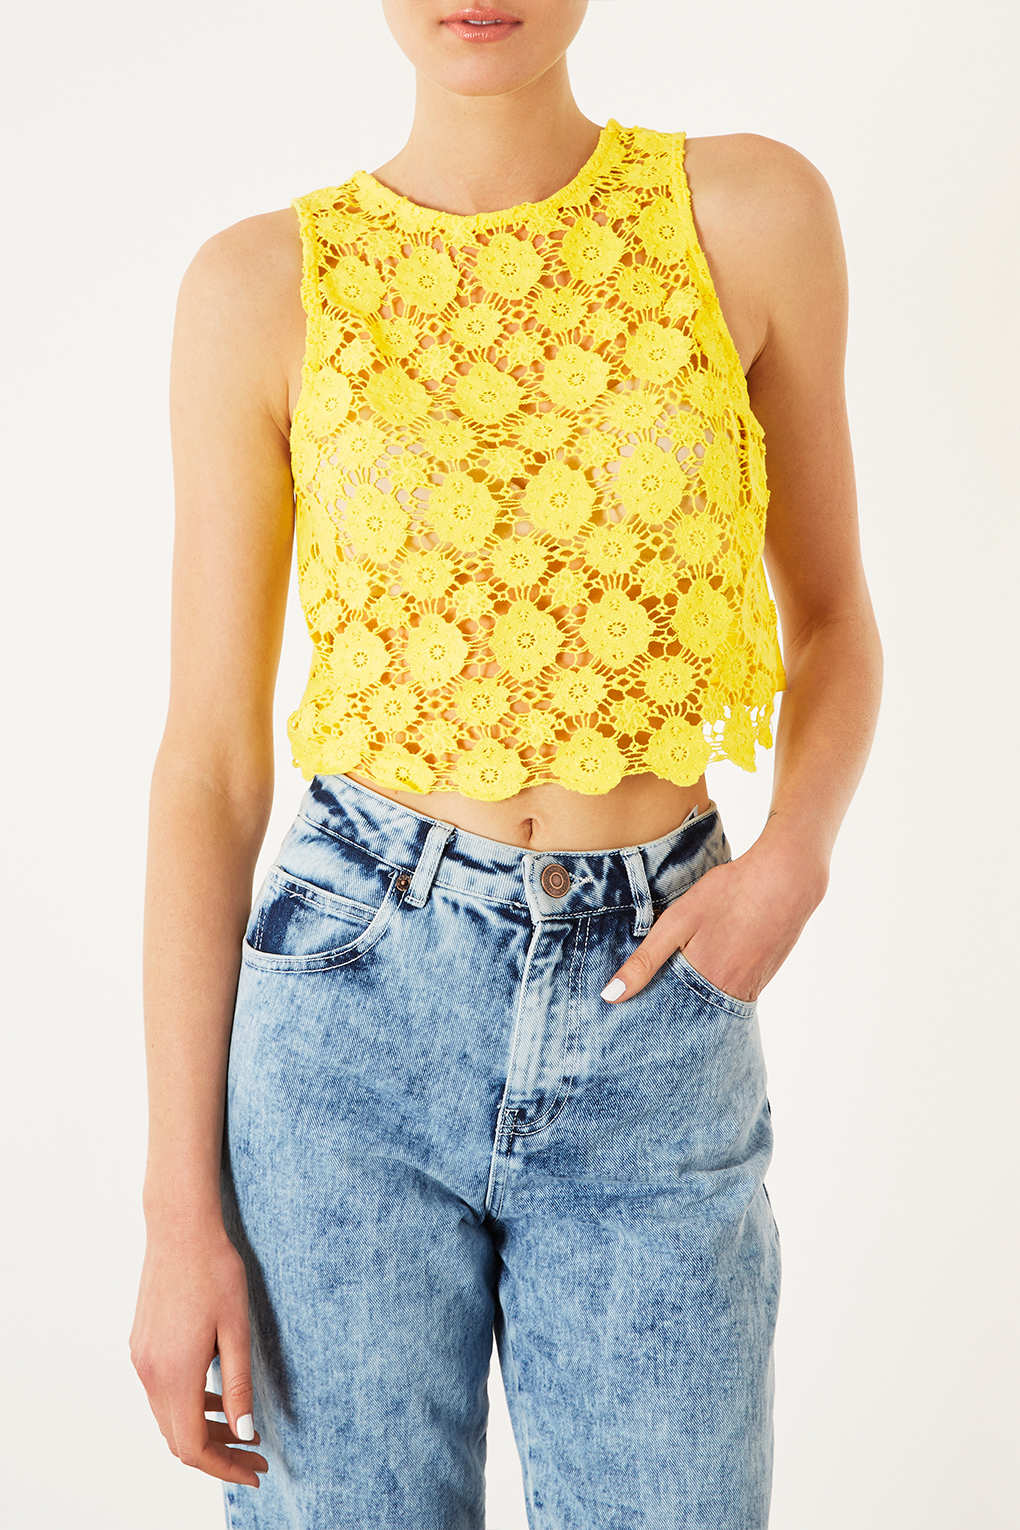 Lyst Topshop Crochet Crop Top In Yellow 9731